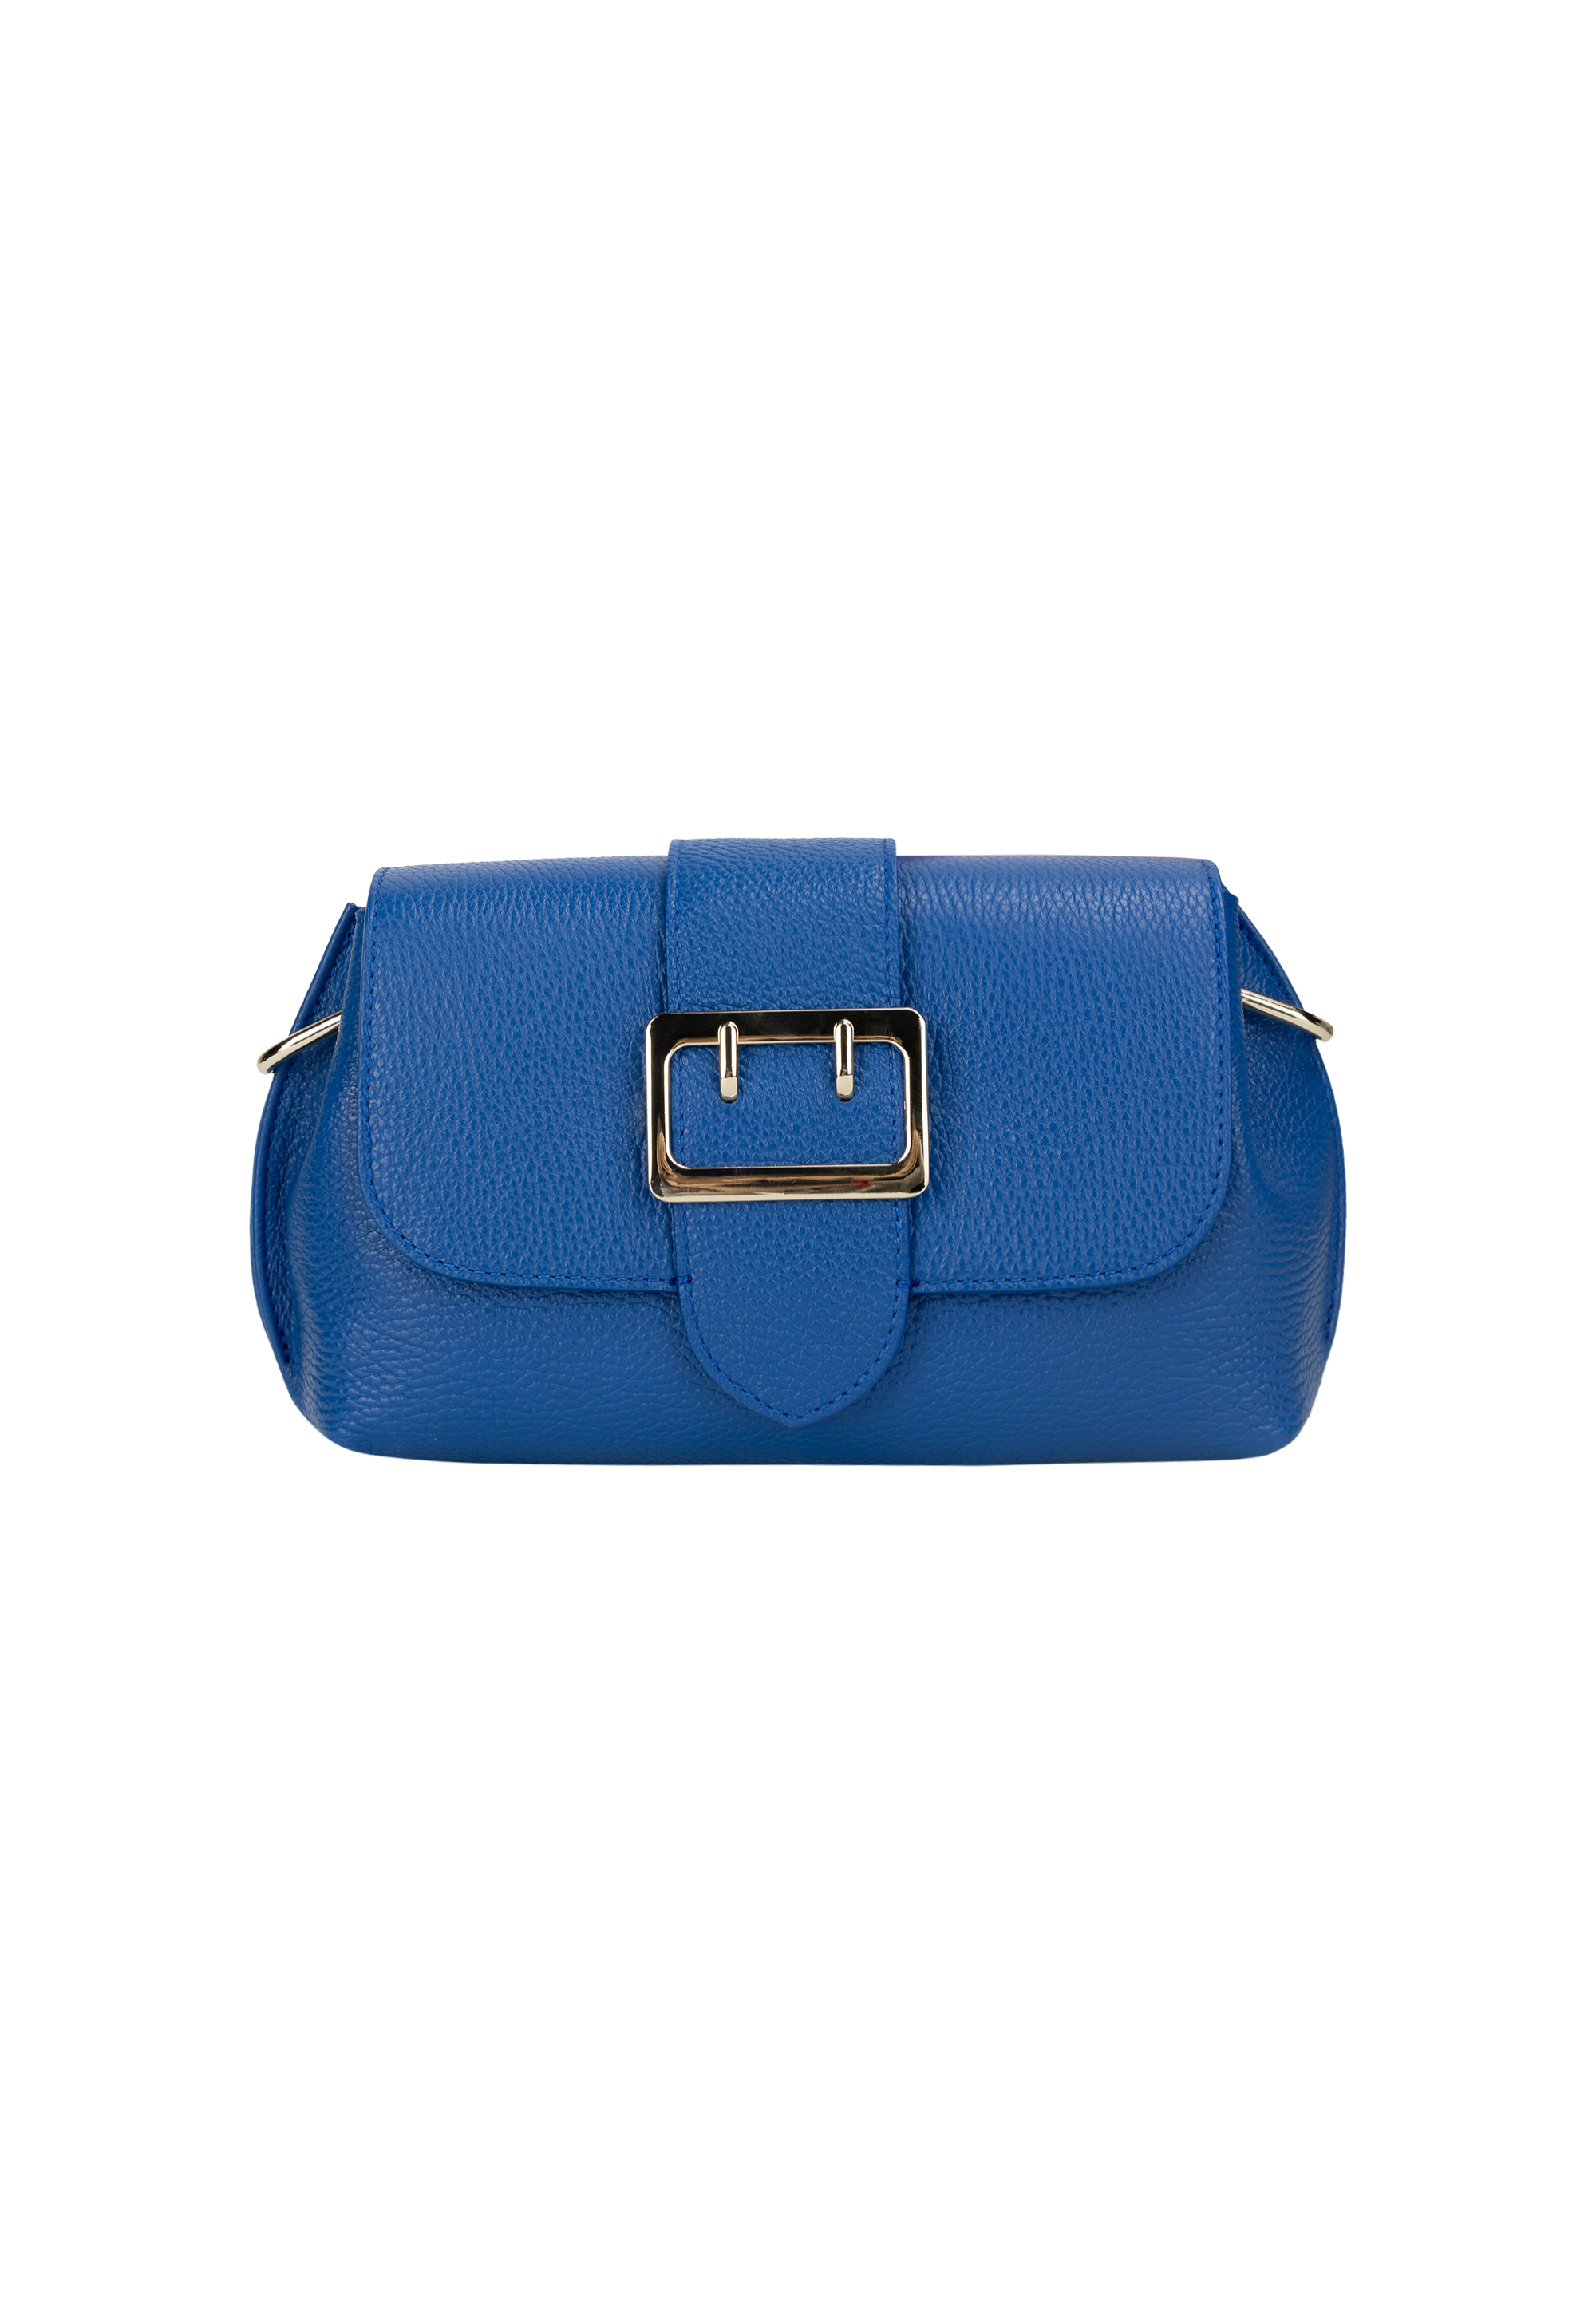 Сумка через плечо NAEMI Handtasche, цвет Azurblau сумка через плечо naemi handtasche цвет curry